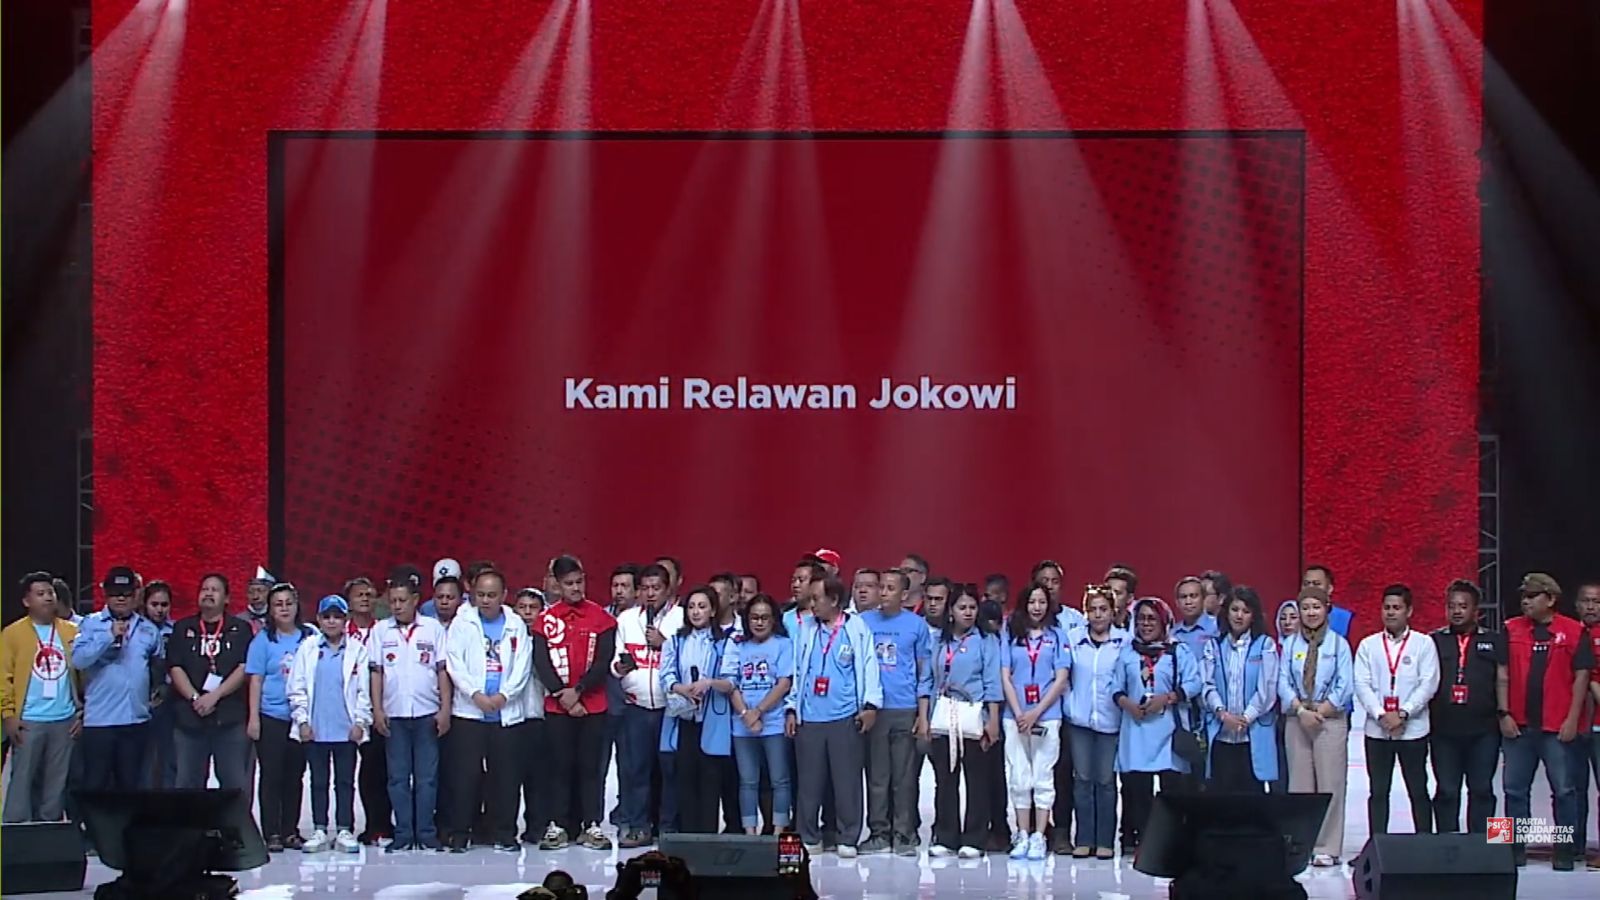 Ratusan Organ Relawan Jokowi Sepakat Menangkan Prabowo Gibran No 02 dan PSI No 15